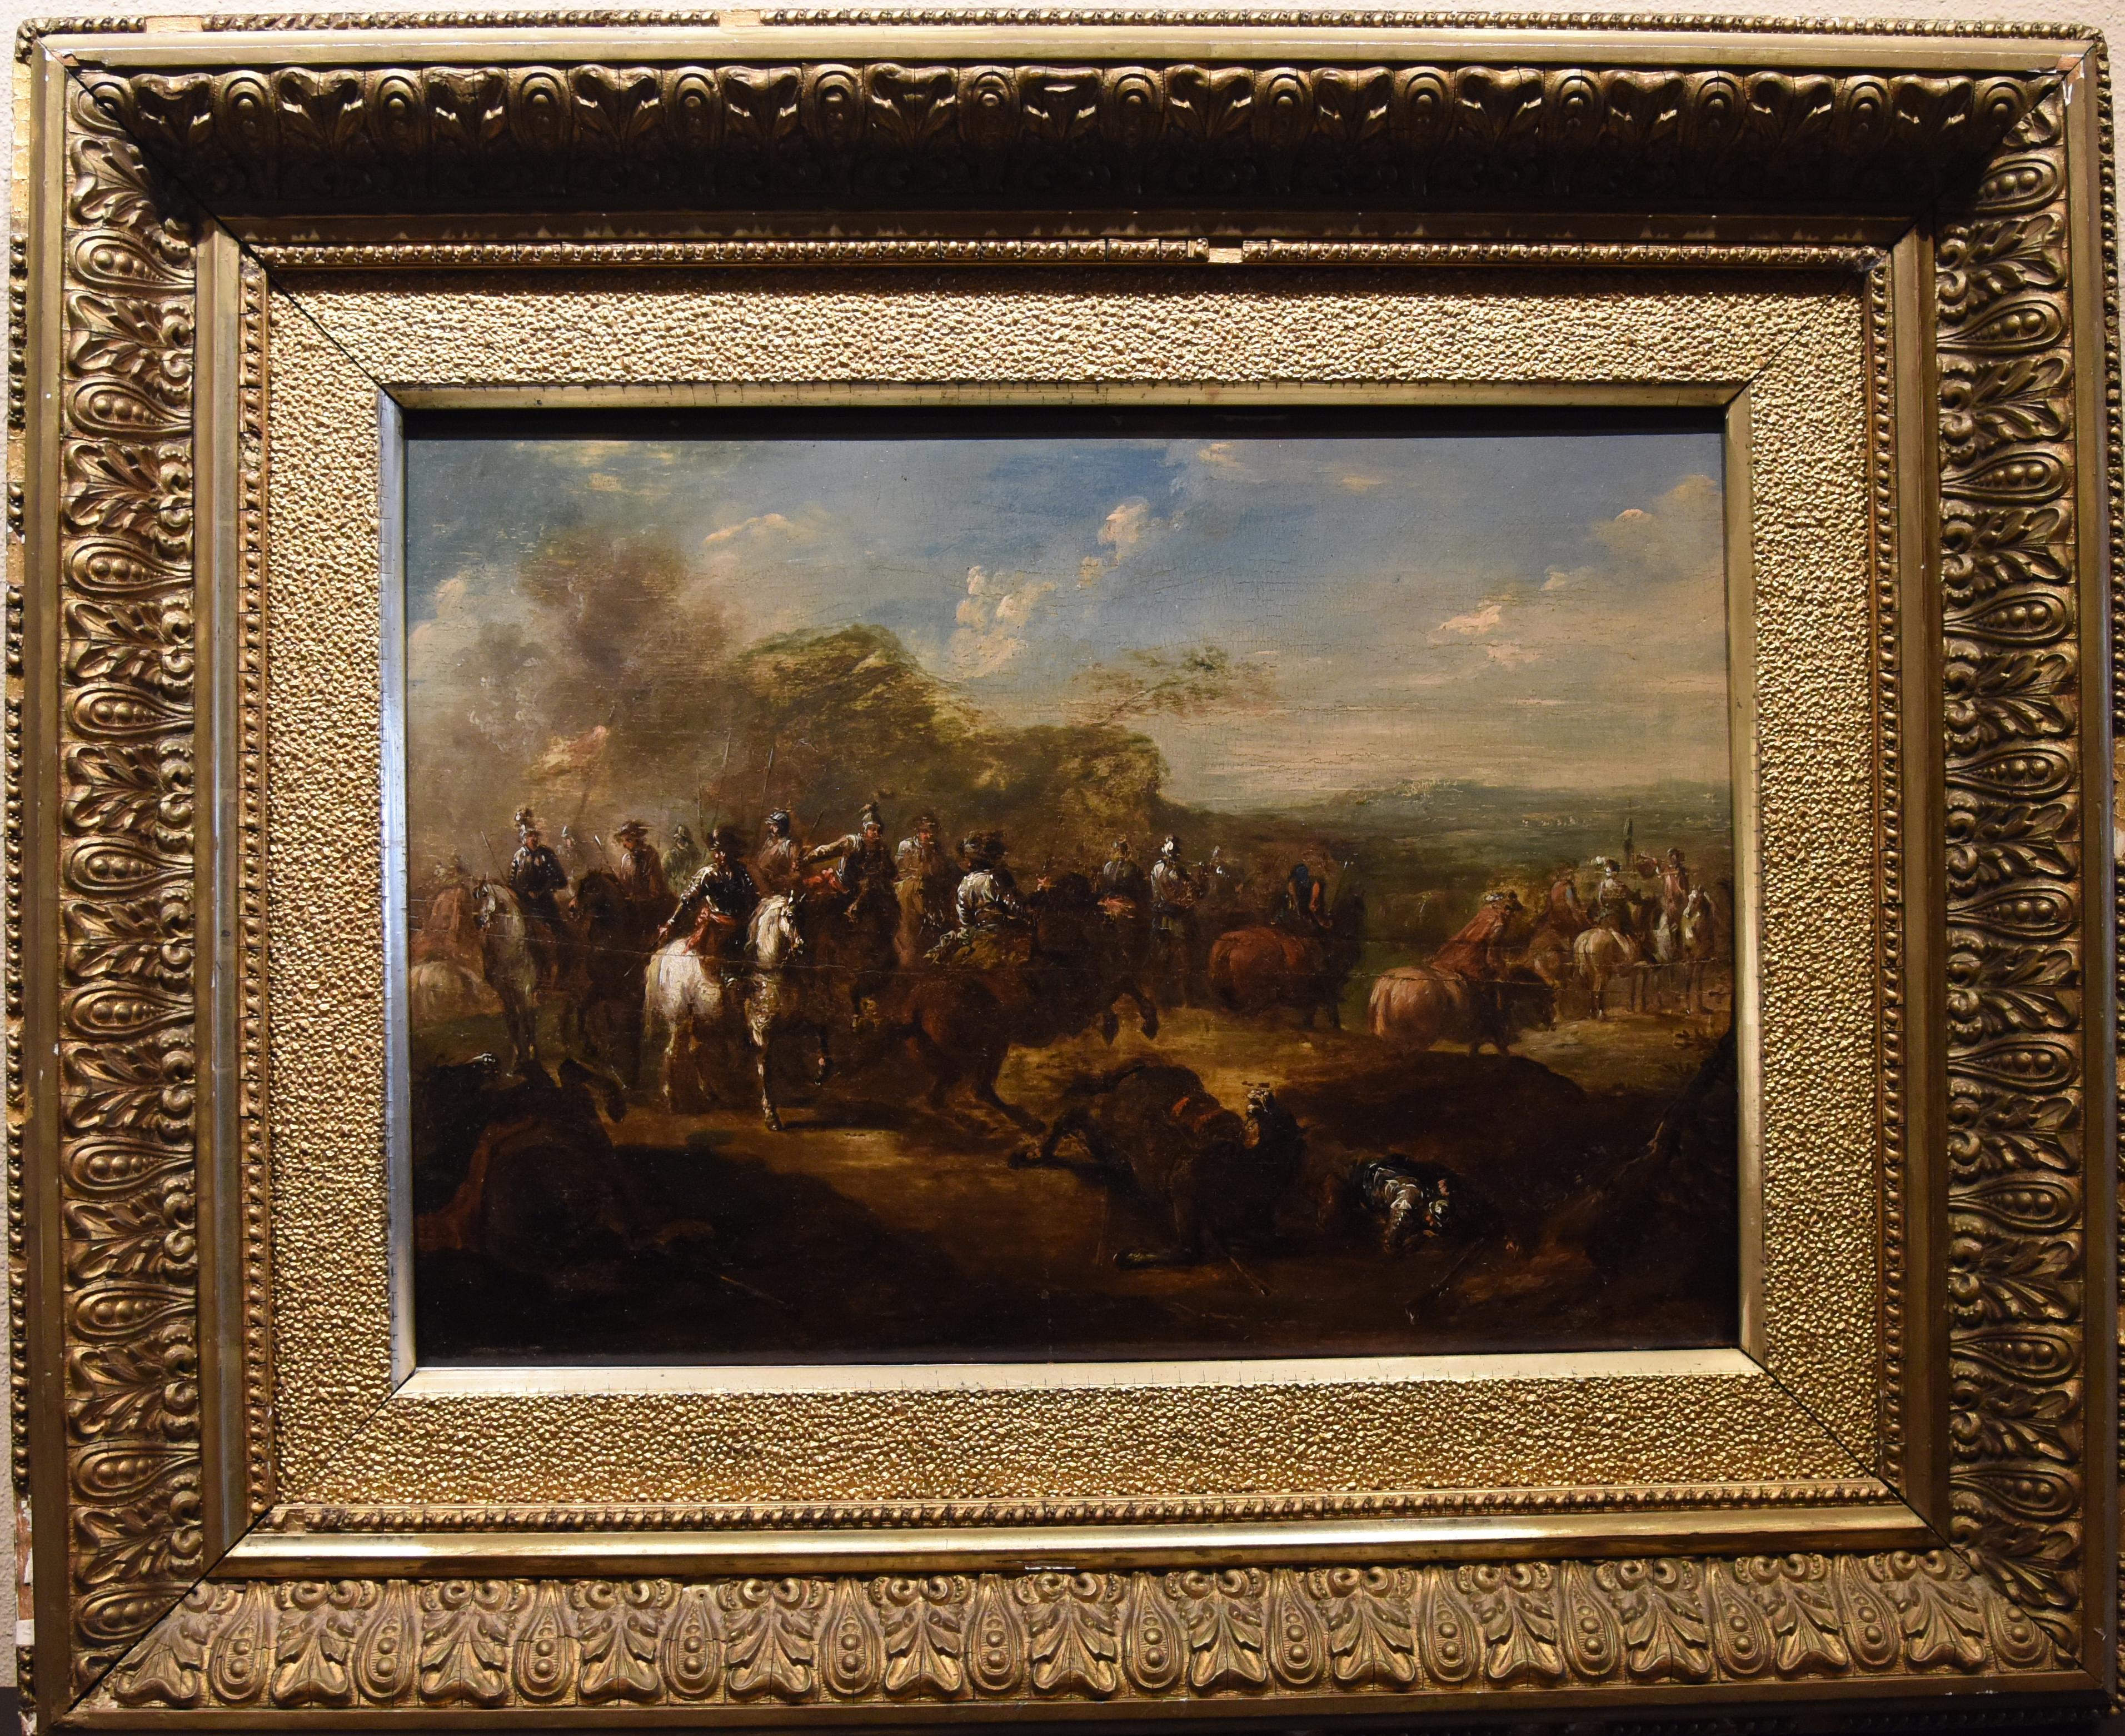 Ölgemälde mit dem Titel „Conquistadors nach der Schlacht“ aus dem 18. Jahrhundert (Braun), Landscape Painting, von Francisco Goya